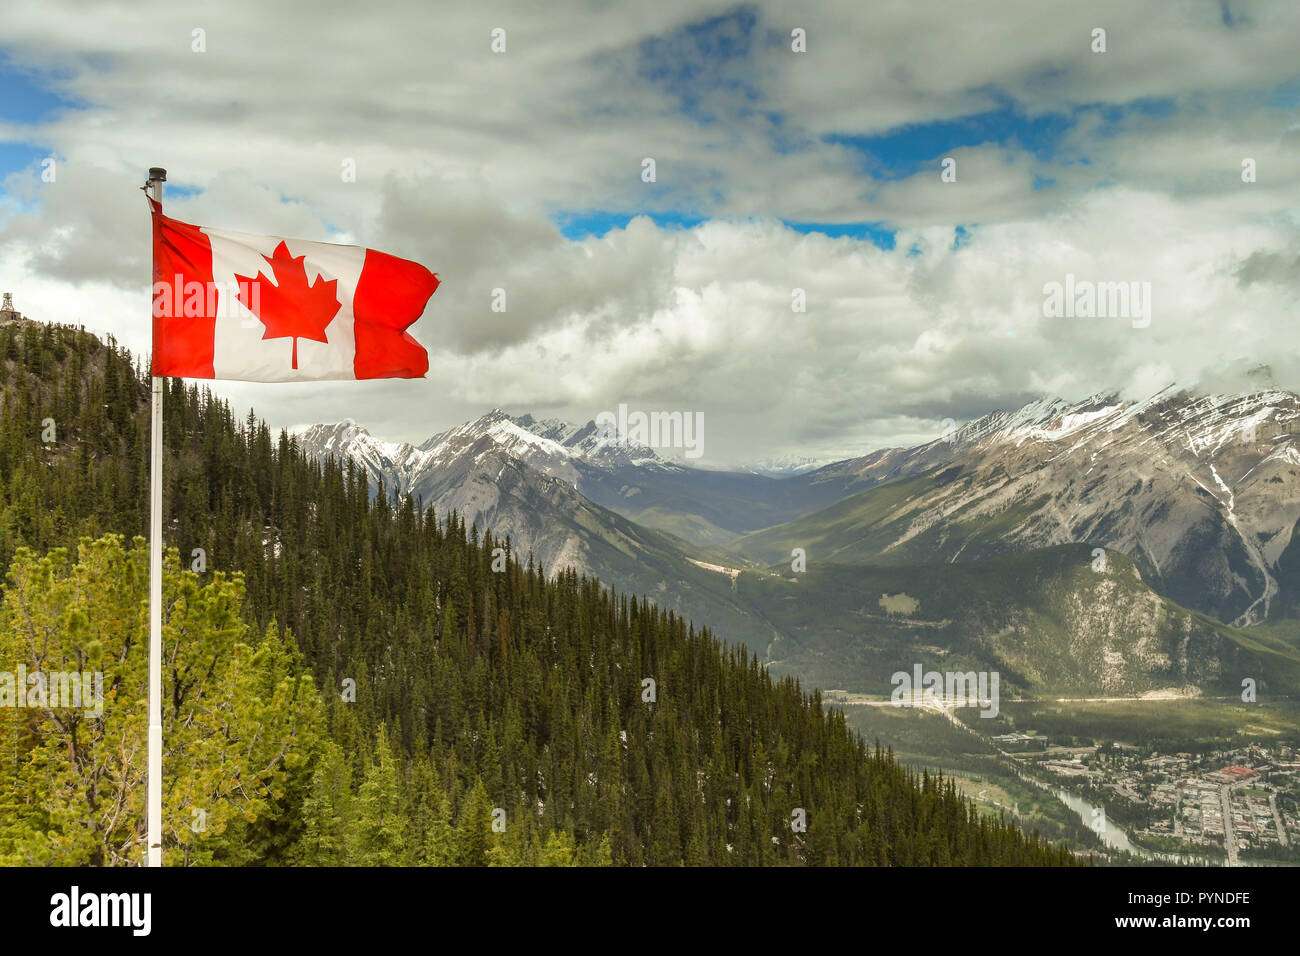 BANFF, AB, Kanada - Juni 2018: Flagge von Kanada, die Maple Leaf, Fliegen auf den Aussichtspunkt auf dem Gipfel des Sulphur Mountain im Banff. Stockfoto